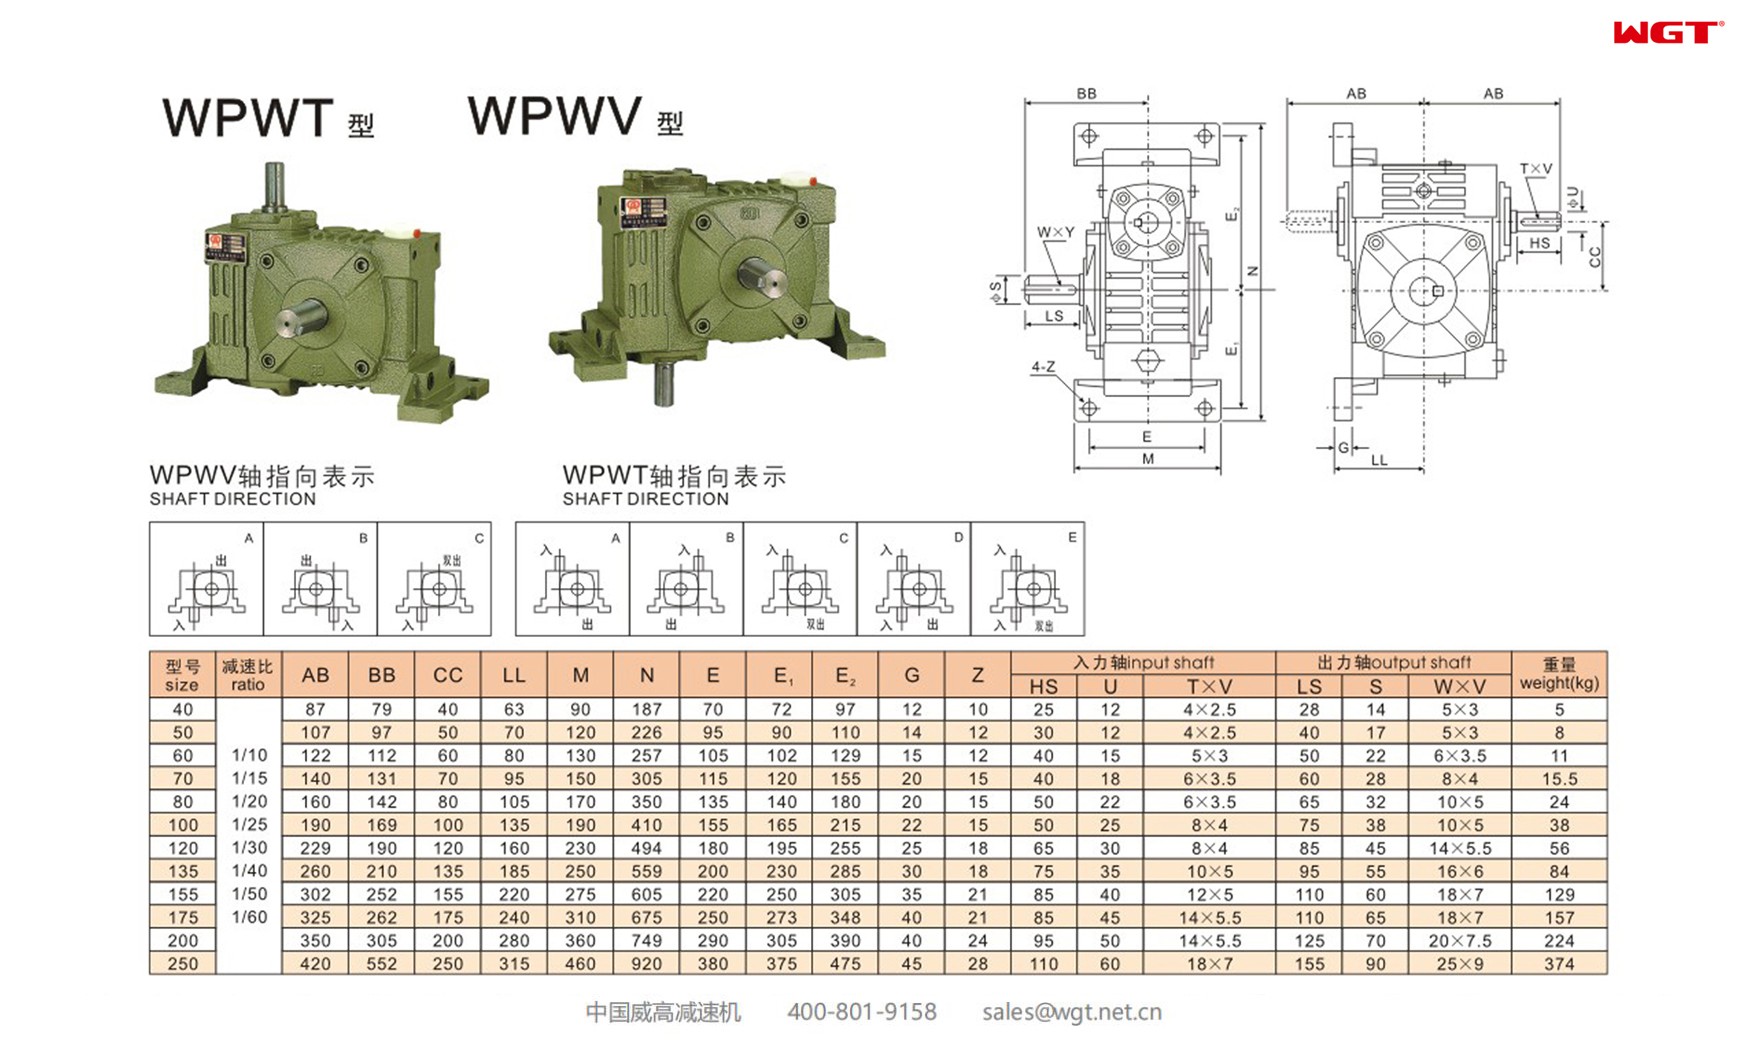 WPWT40 worm gear reducer universal speed reducer 